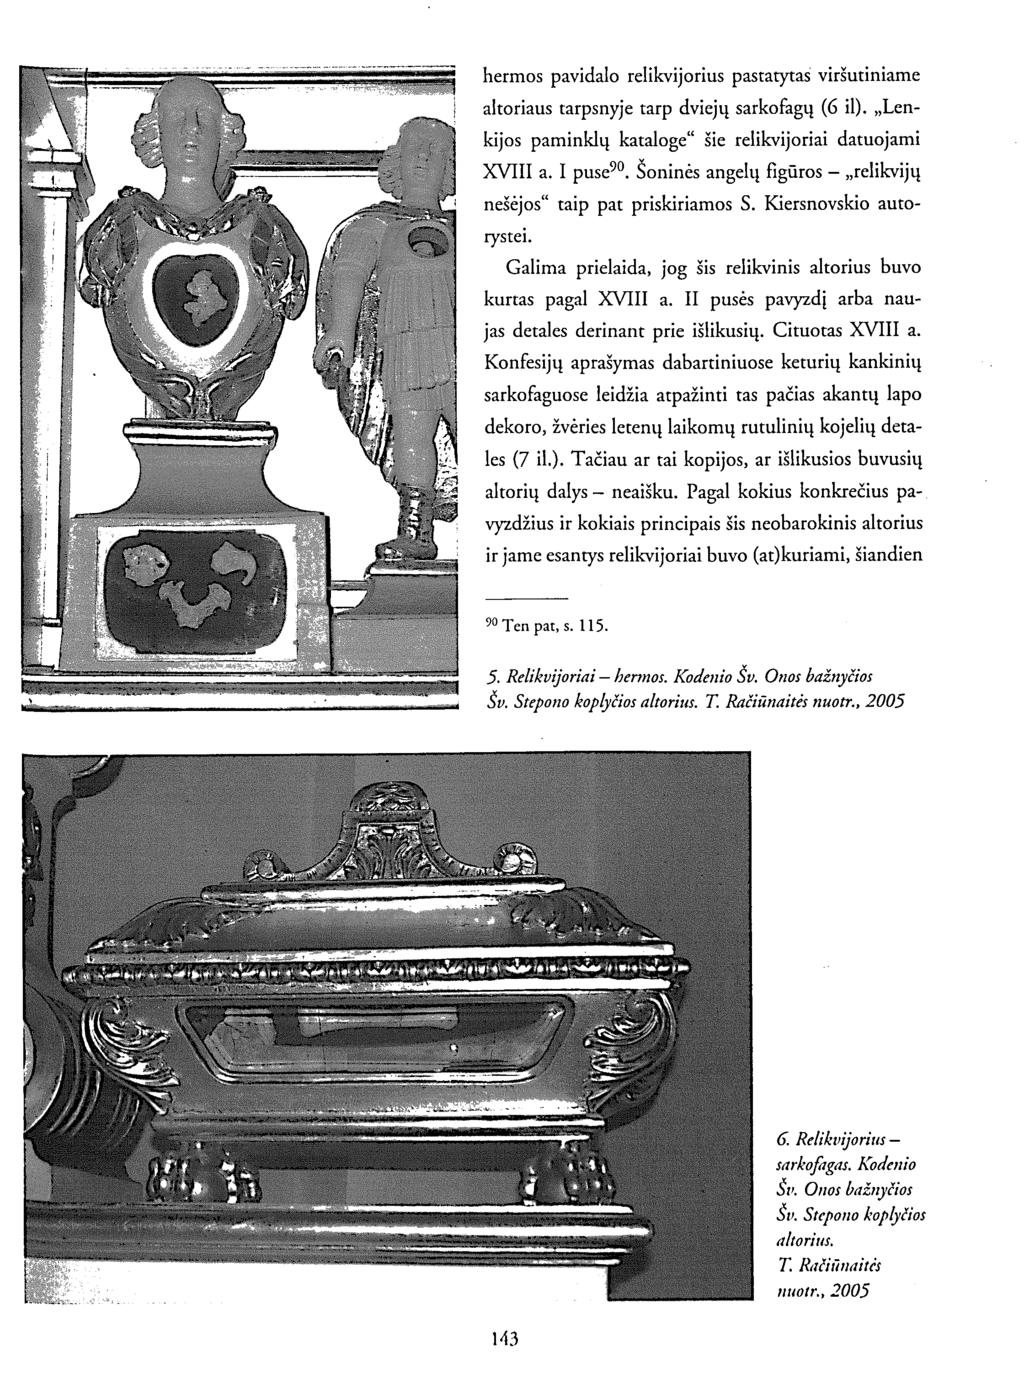 hermos pavidalo relikvijorius pastatytas viršutiniame altoriaus tarpsnyje tarp dviejų sarkofagų (6 il). Lenkijos paminklų kataloge" šie relikvijoriai datuojami XVIII a. I puse 90.